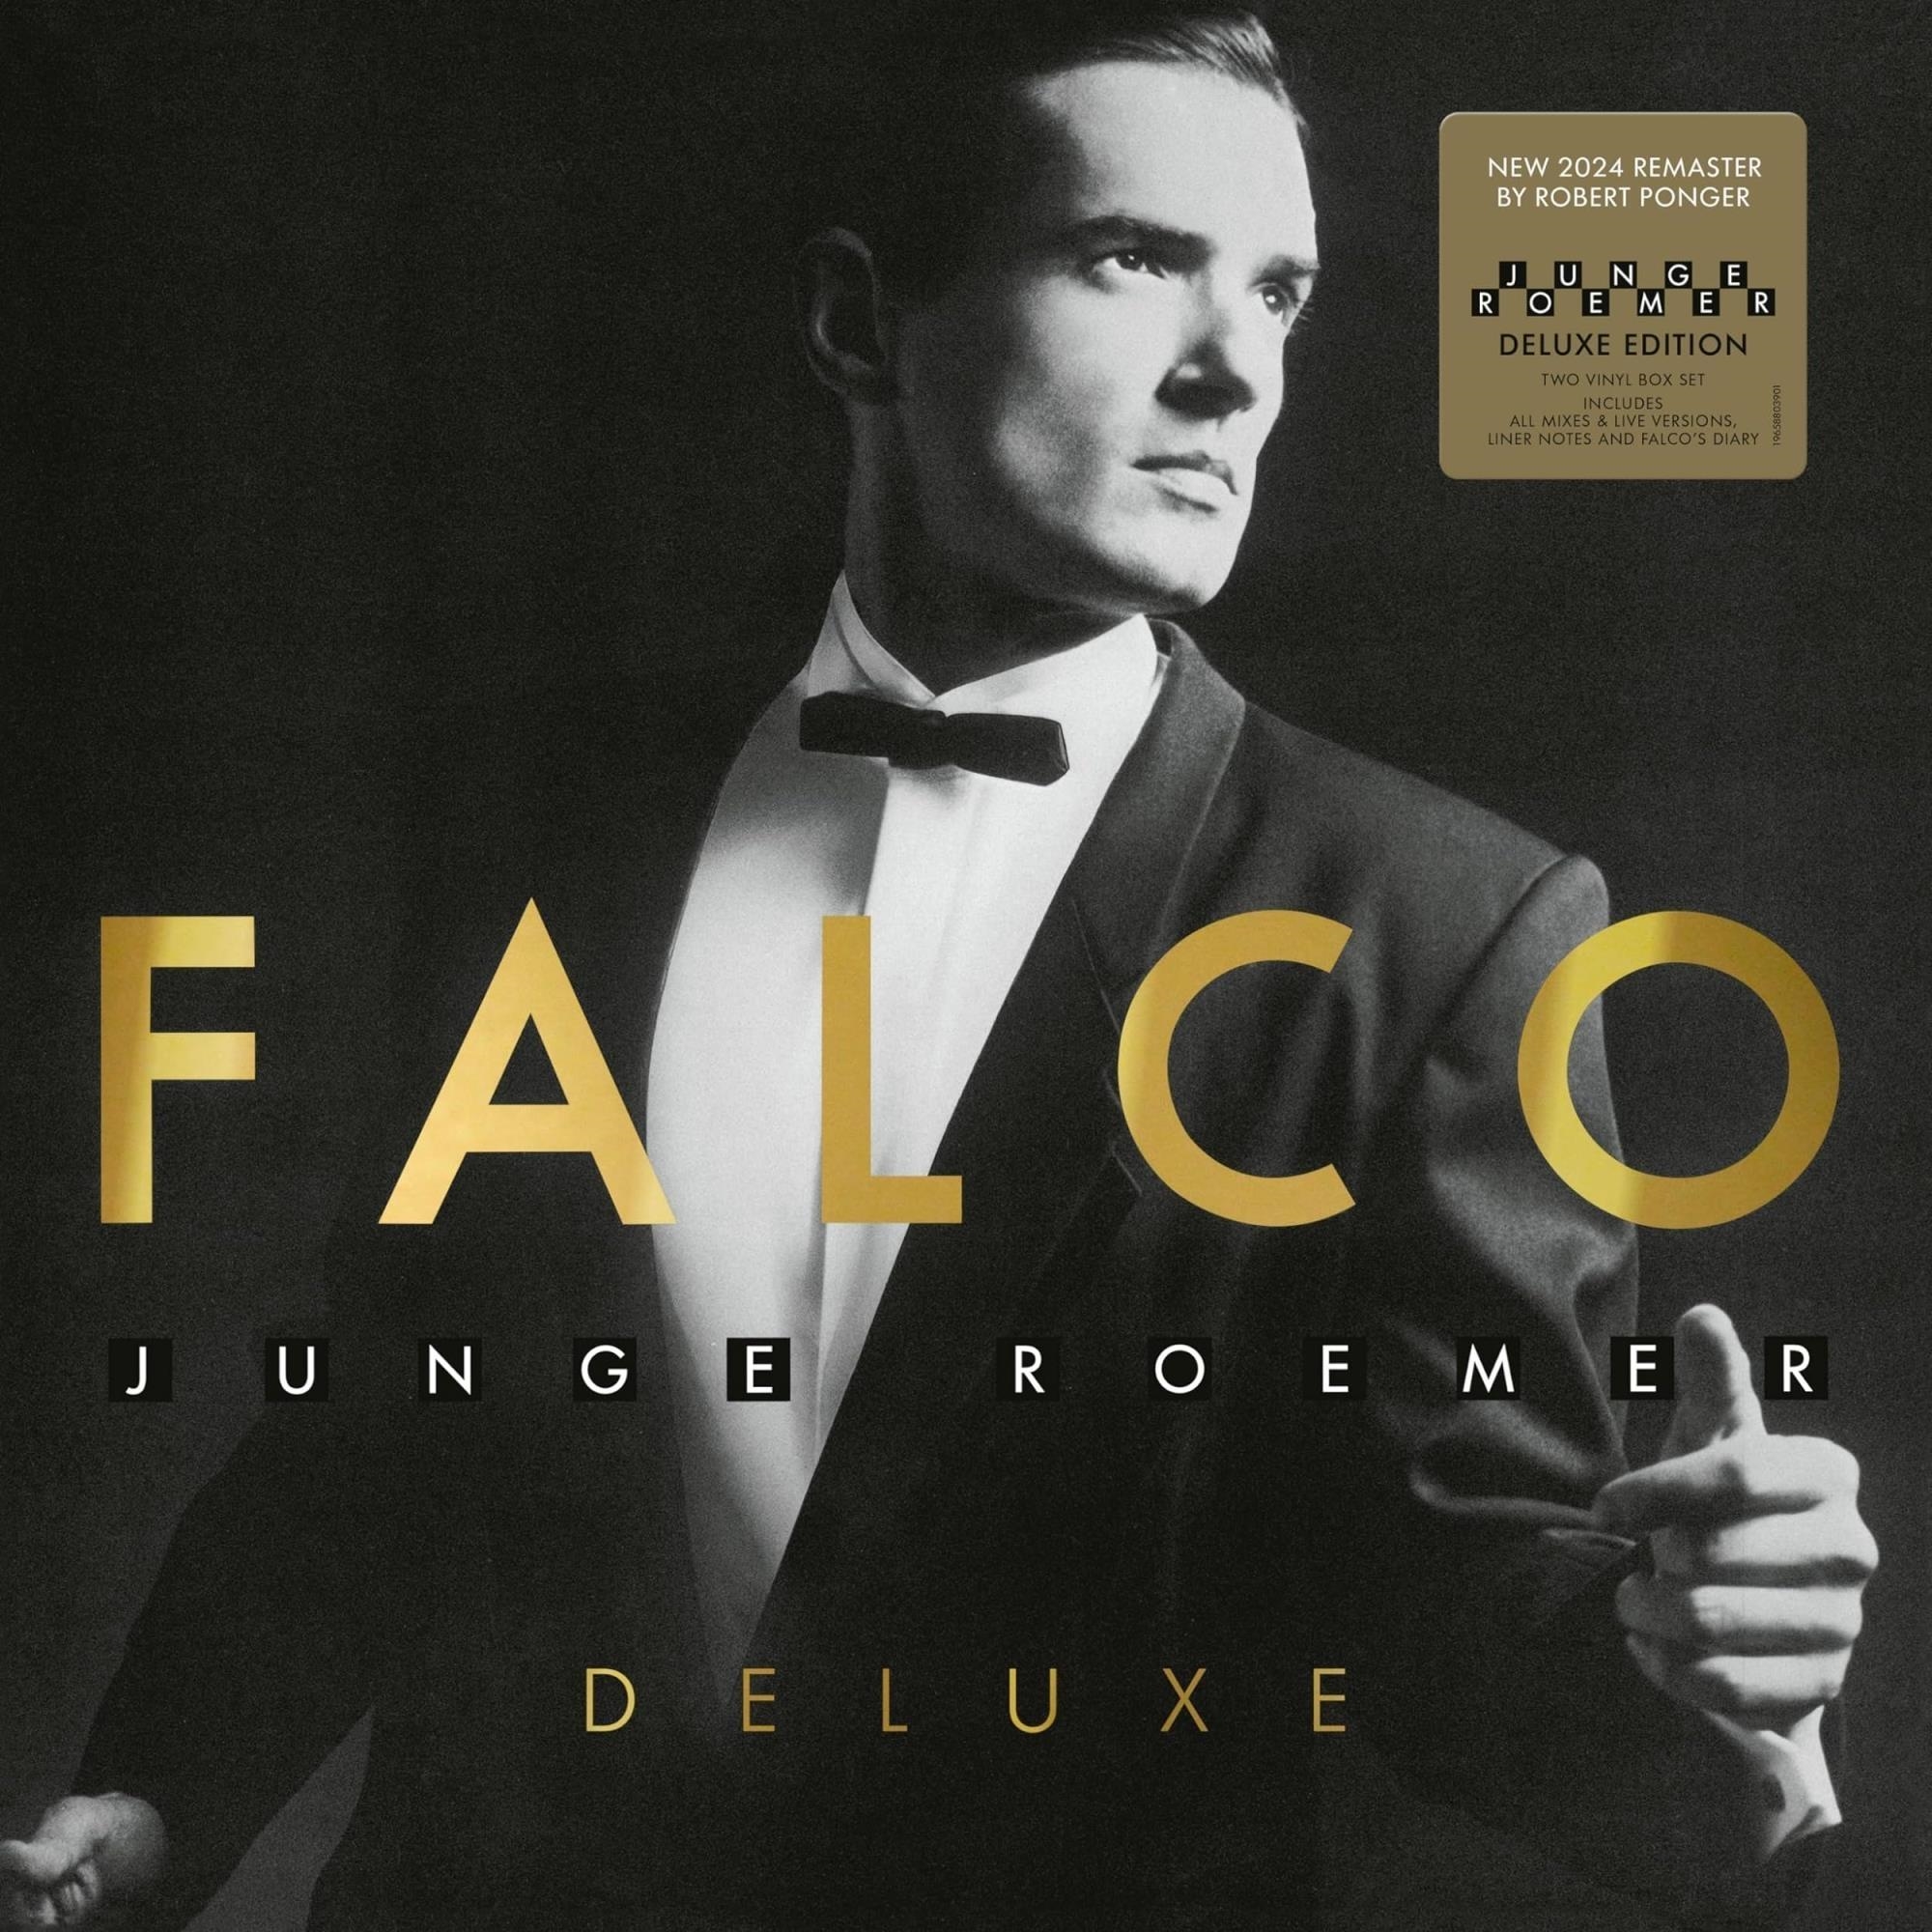 Vinile Falco - Junge Roemer - Deluxe Edition (2 Lp) NUOVO SIGILLATO, EDIZIONE DEL 19/04/2024 SUBITO DISPONIBILE